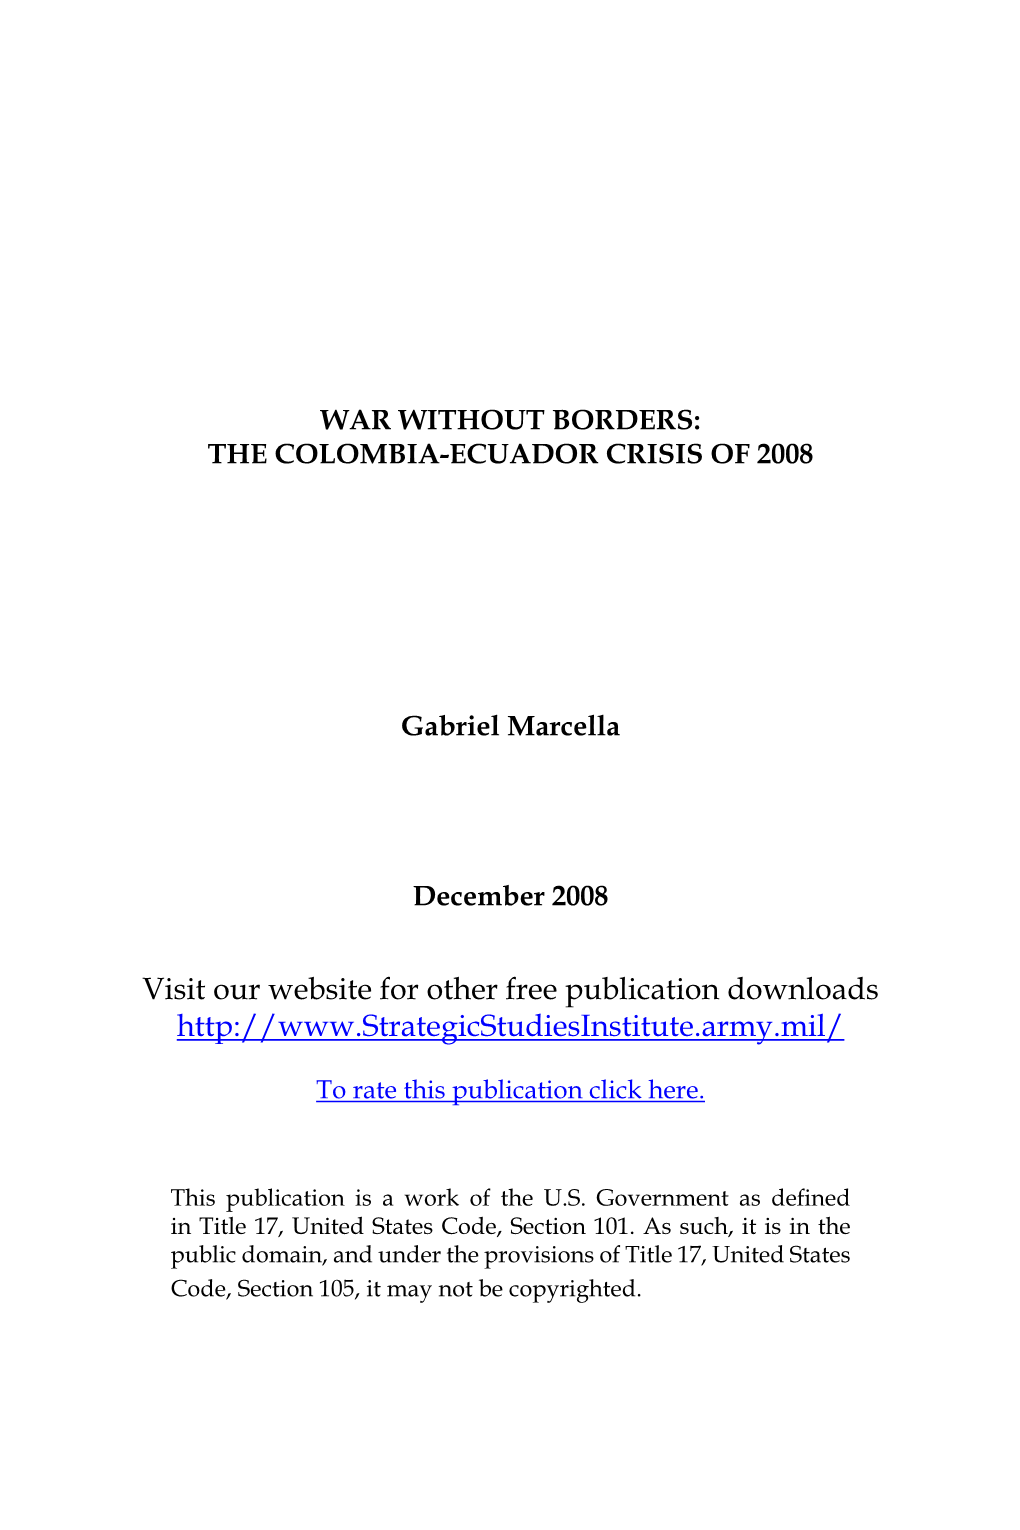 The Columbia-Ecuador Crisis of 2008